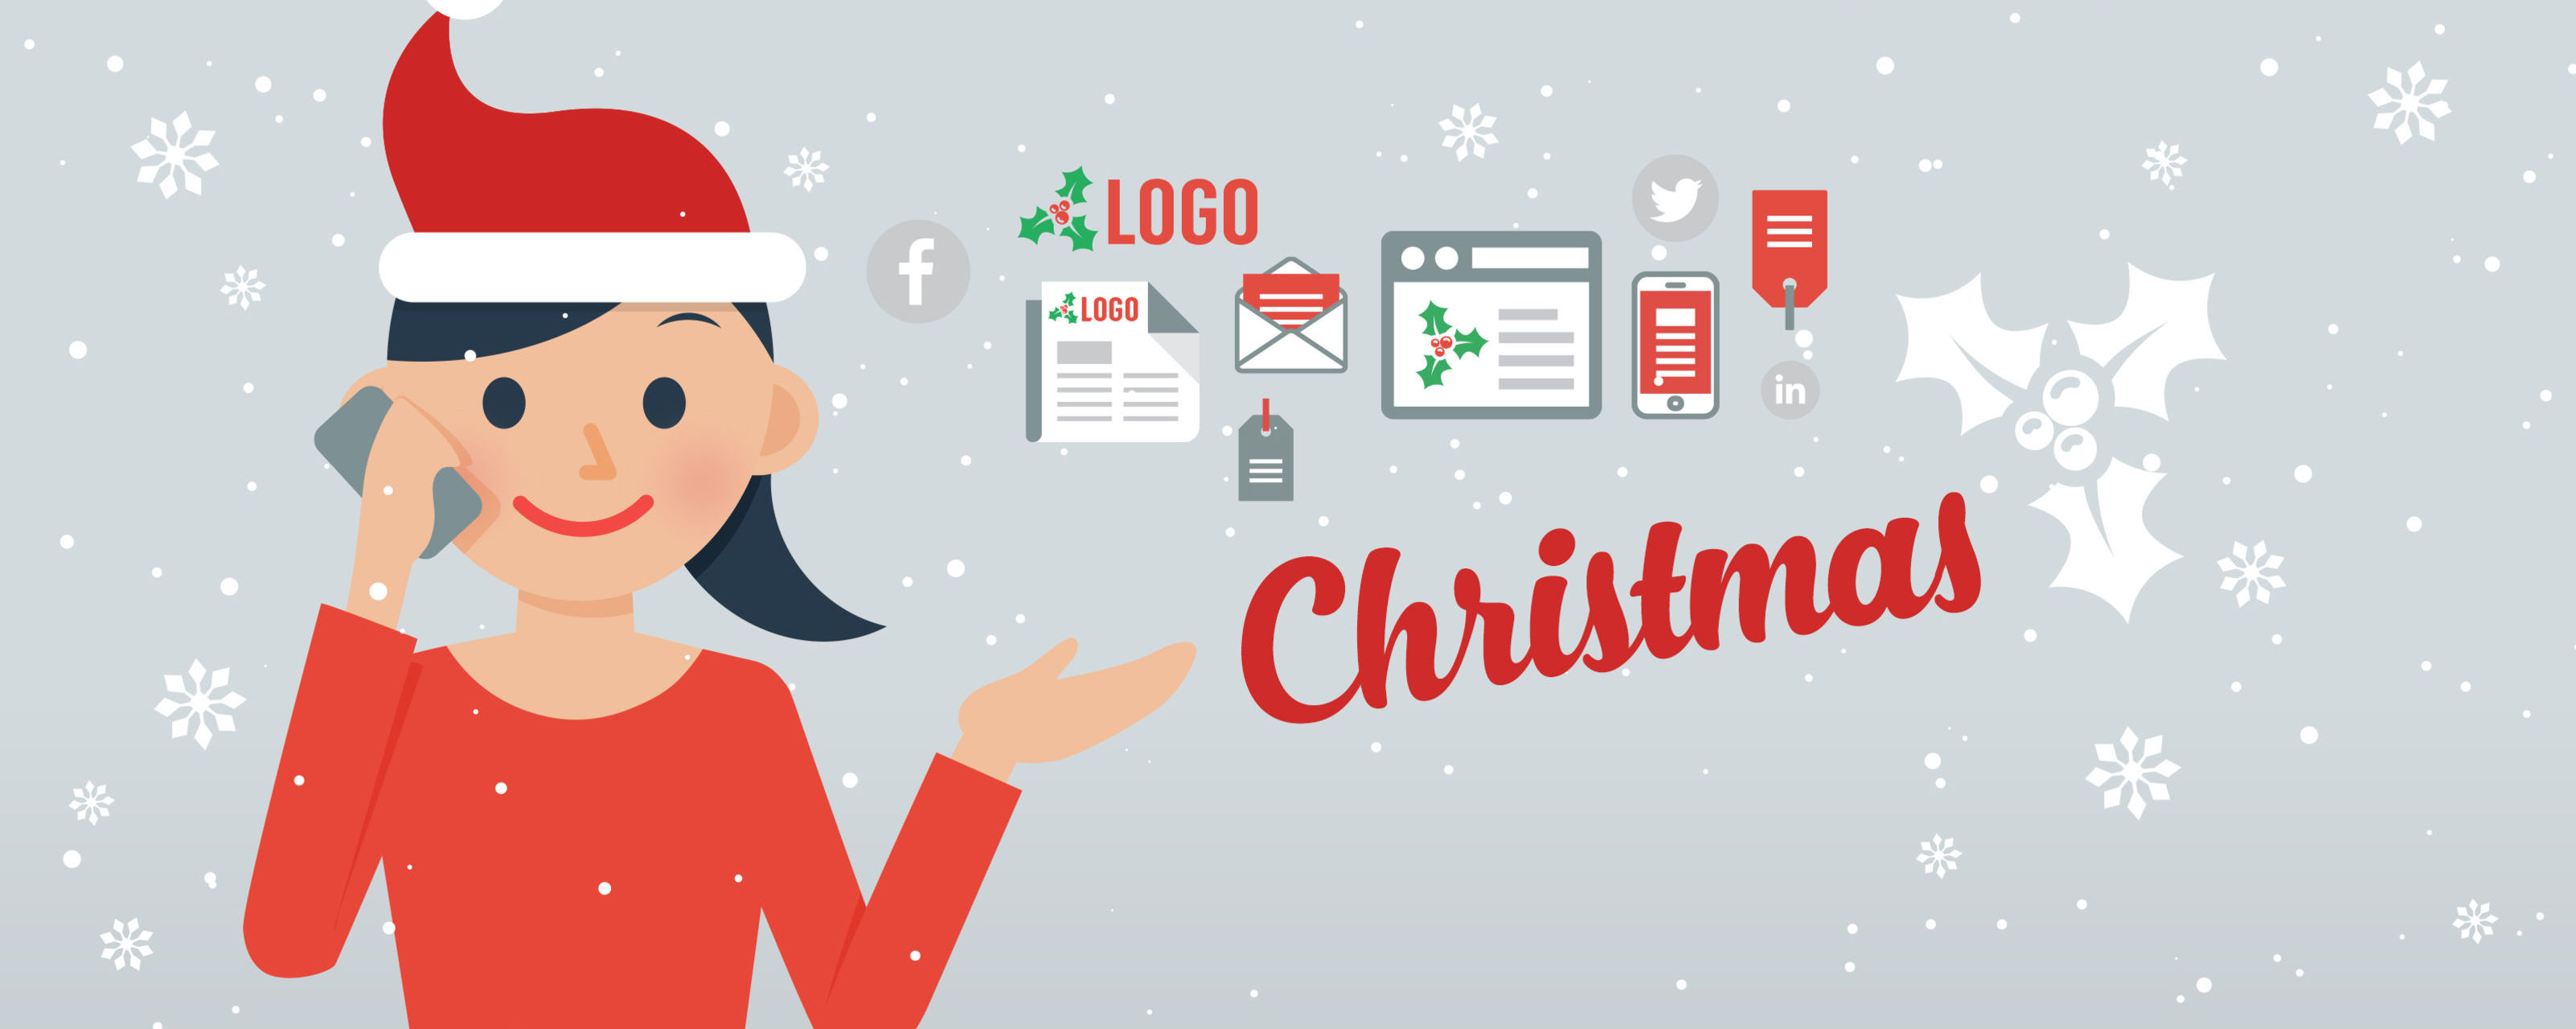 Christmas Artwork & Design Services